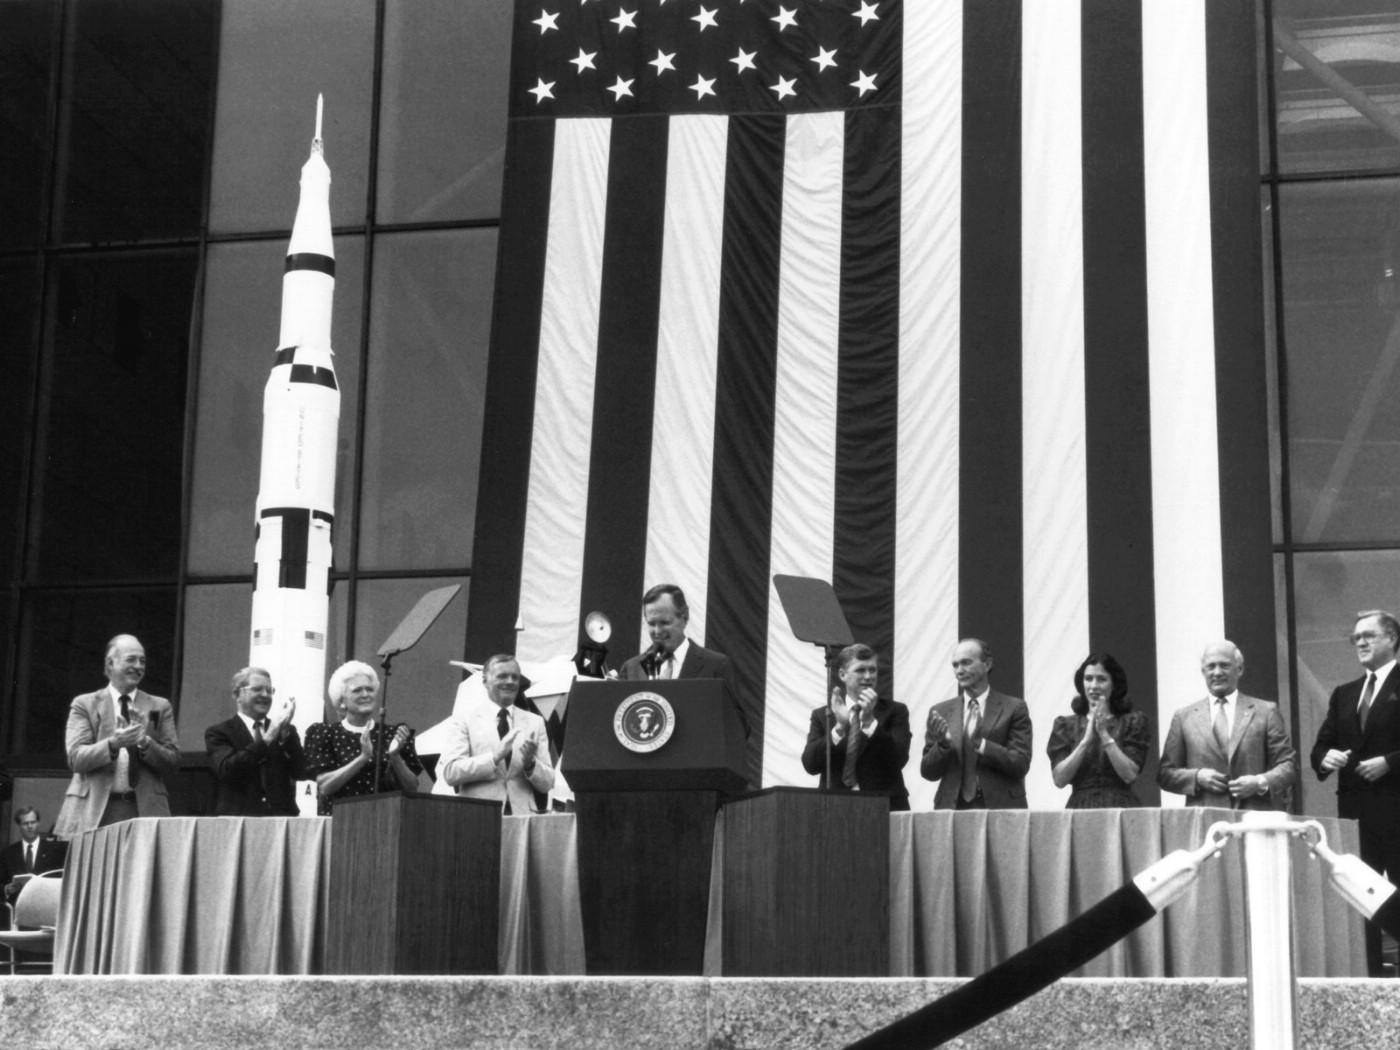 壁纸1400x1050One Giant Leap for Mankind  President George Bush and Apollo 11 Astronauts 1989年老布什总统和登月英雄壁纸 阿波罗11号登月40周年纪念壁纸壁纸 阿波罗11号登月40周年纪念壁纸图片 阿波罗11号登月40周年纪念壁纸素材 人文壁纸 人文图库 人文图片素材桌面壁纸